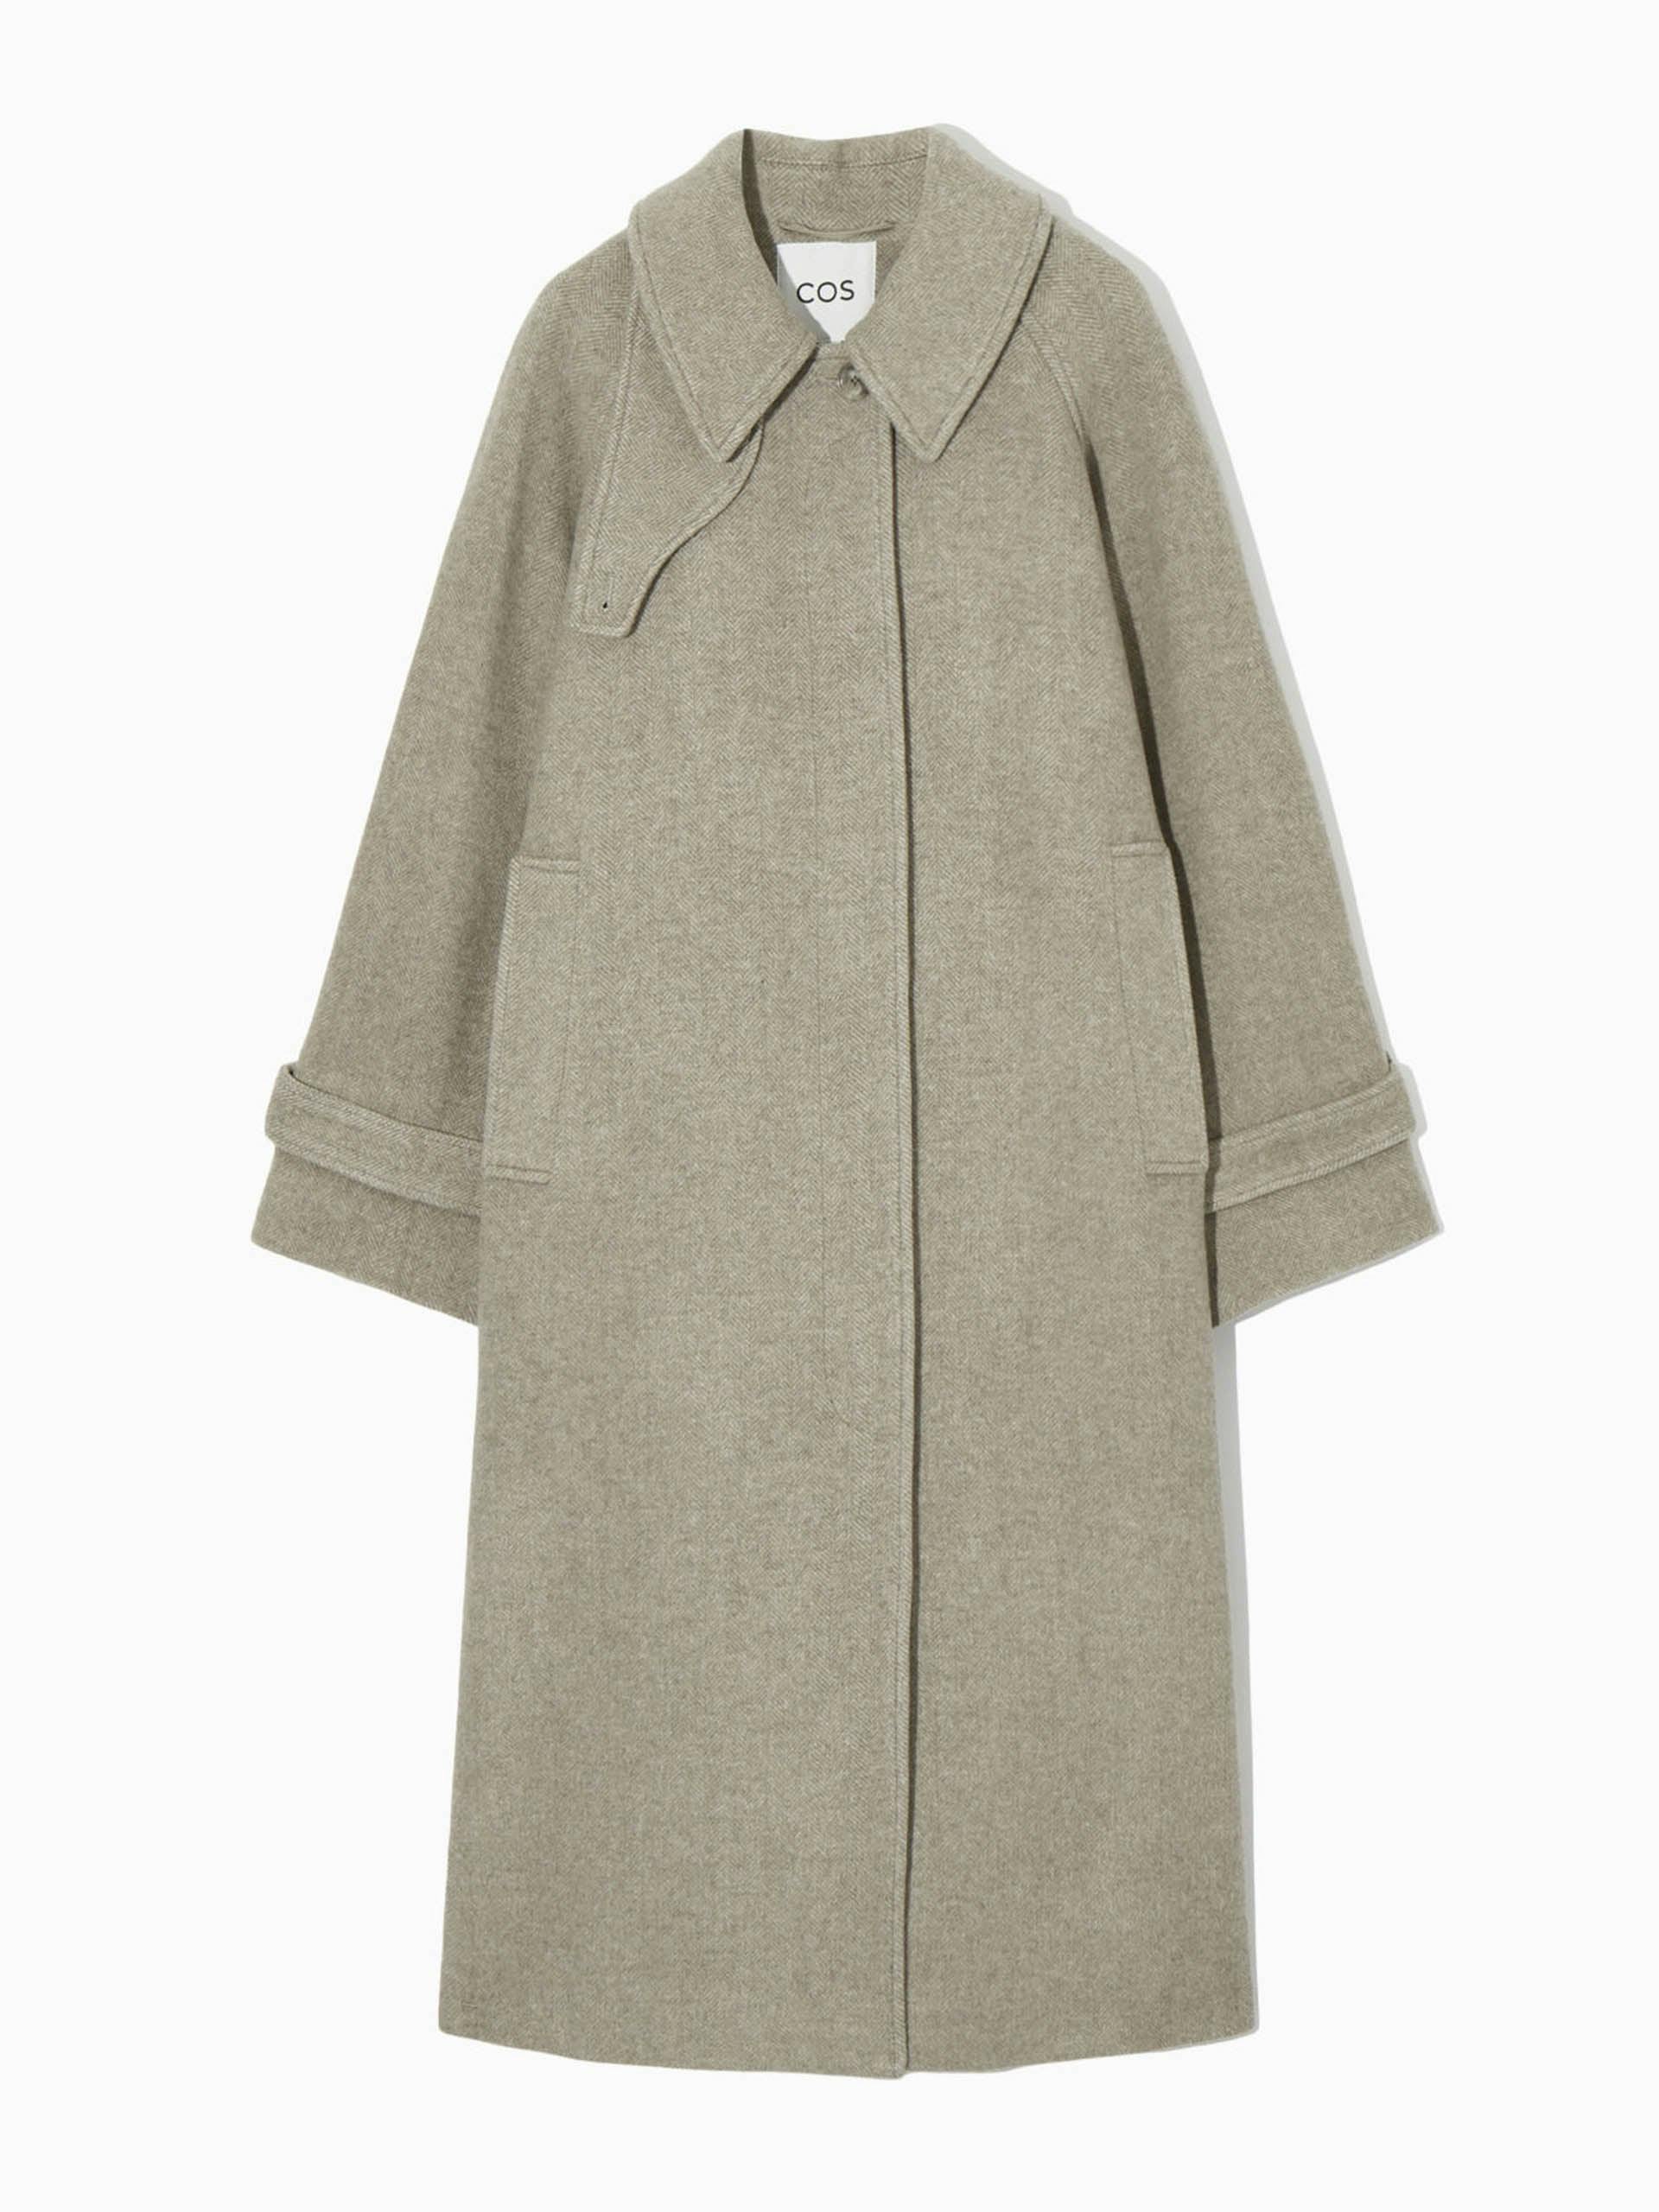 Oversized rounded beige wool coat